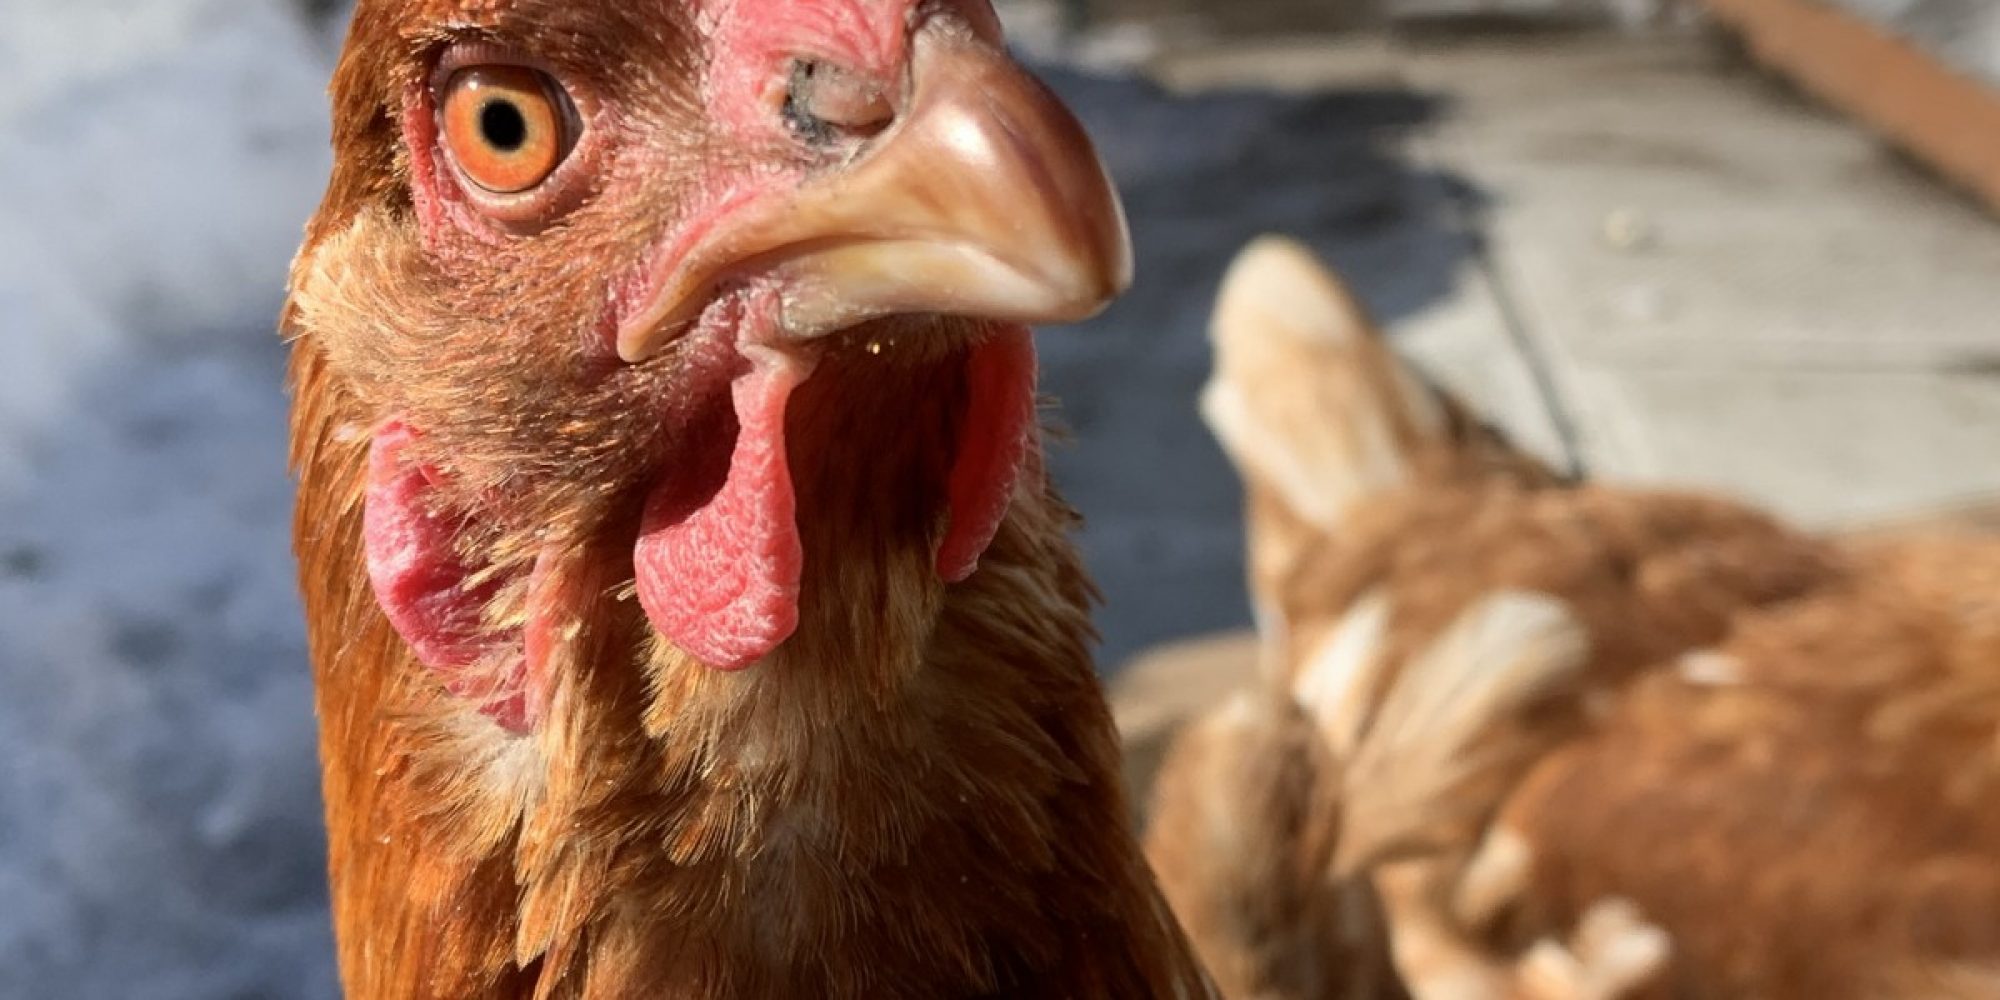 Avez-vous observé l'état de santé de vos poules cette semaine